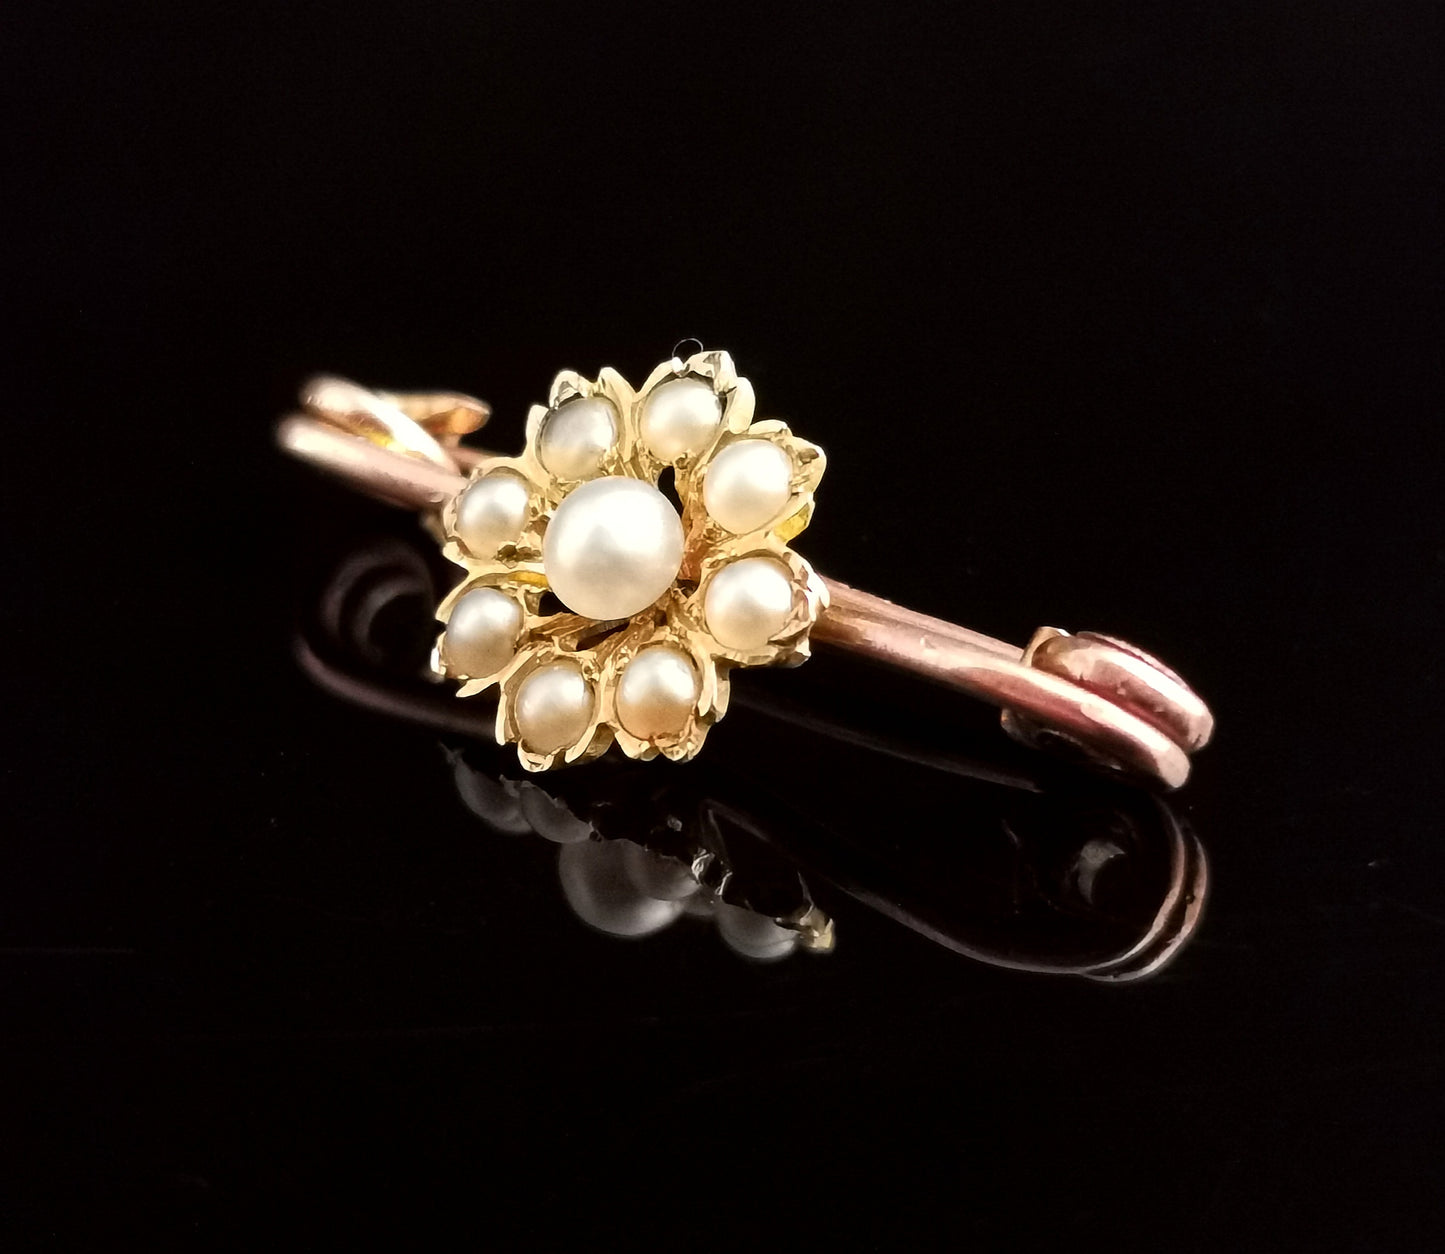 Antique 9ct gold pearl flower brooch, lapel pin, Art Nouveau